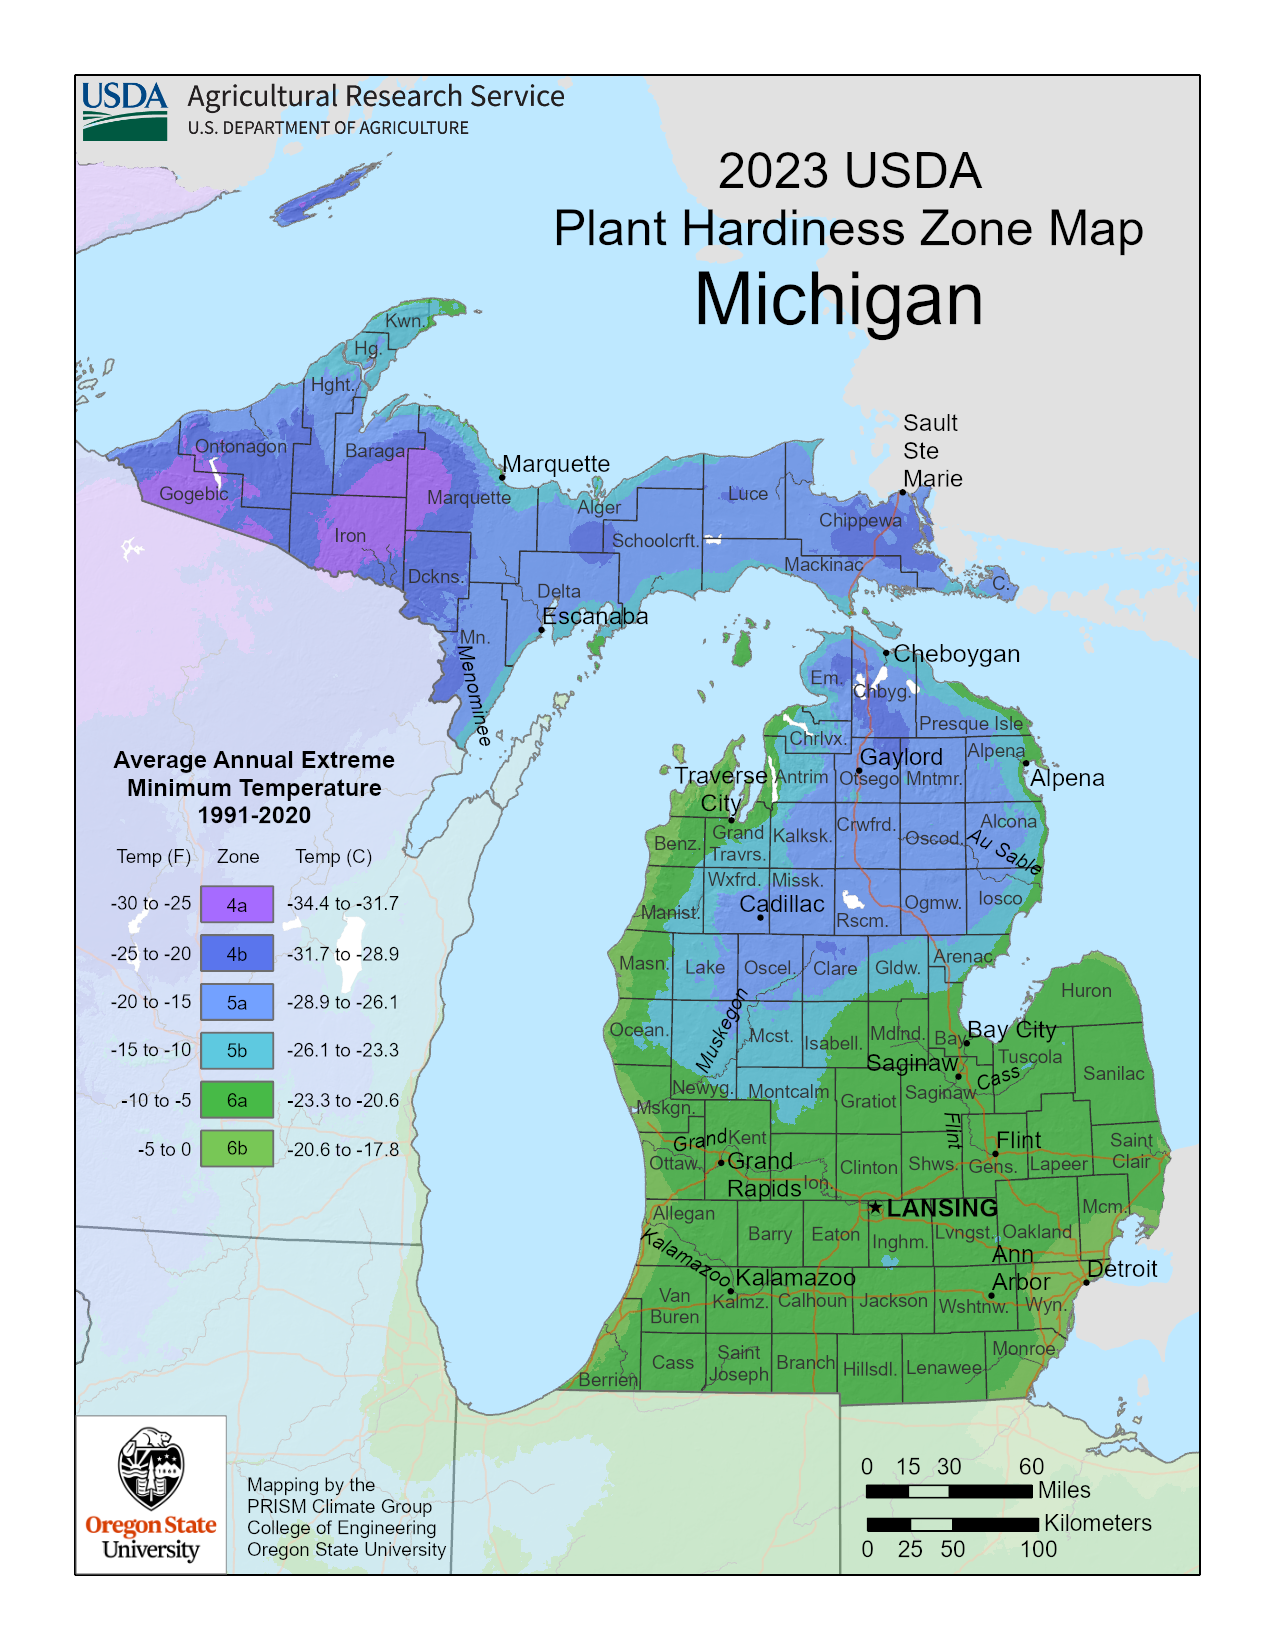 USDA Hardiness Zone Maps of the United States, Landscape Plants